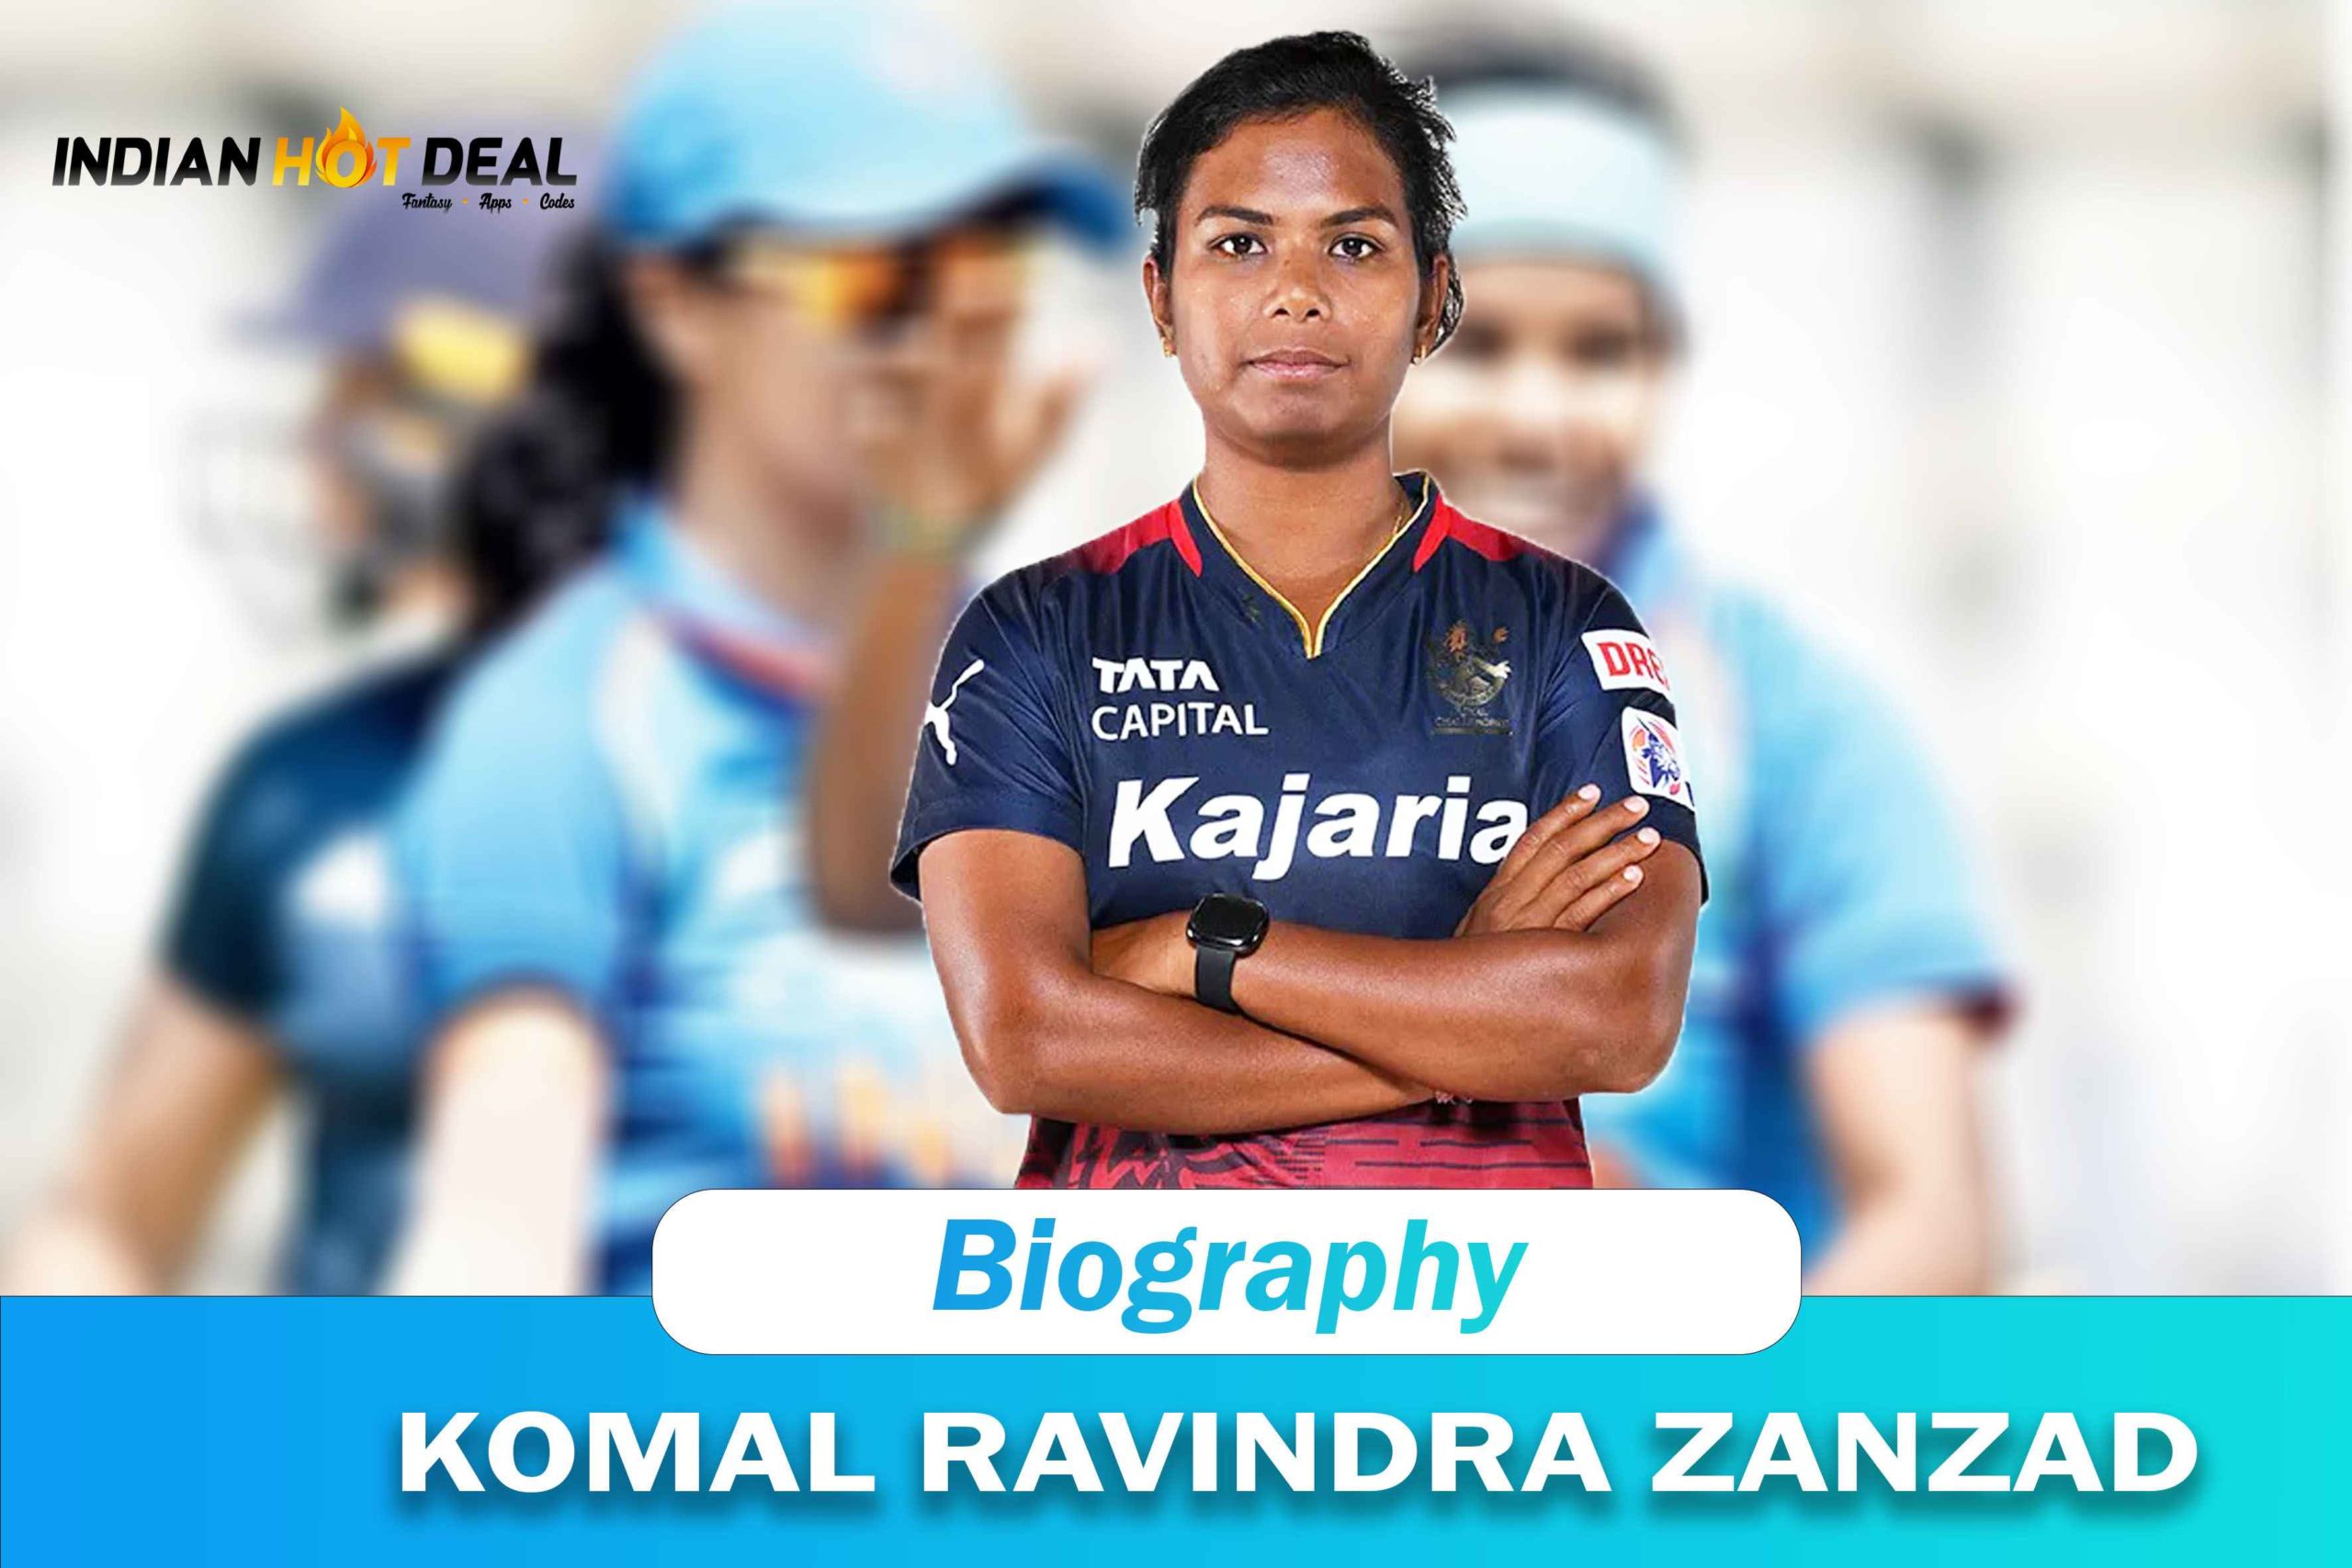 Komal Ravindra Zanzad Biography